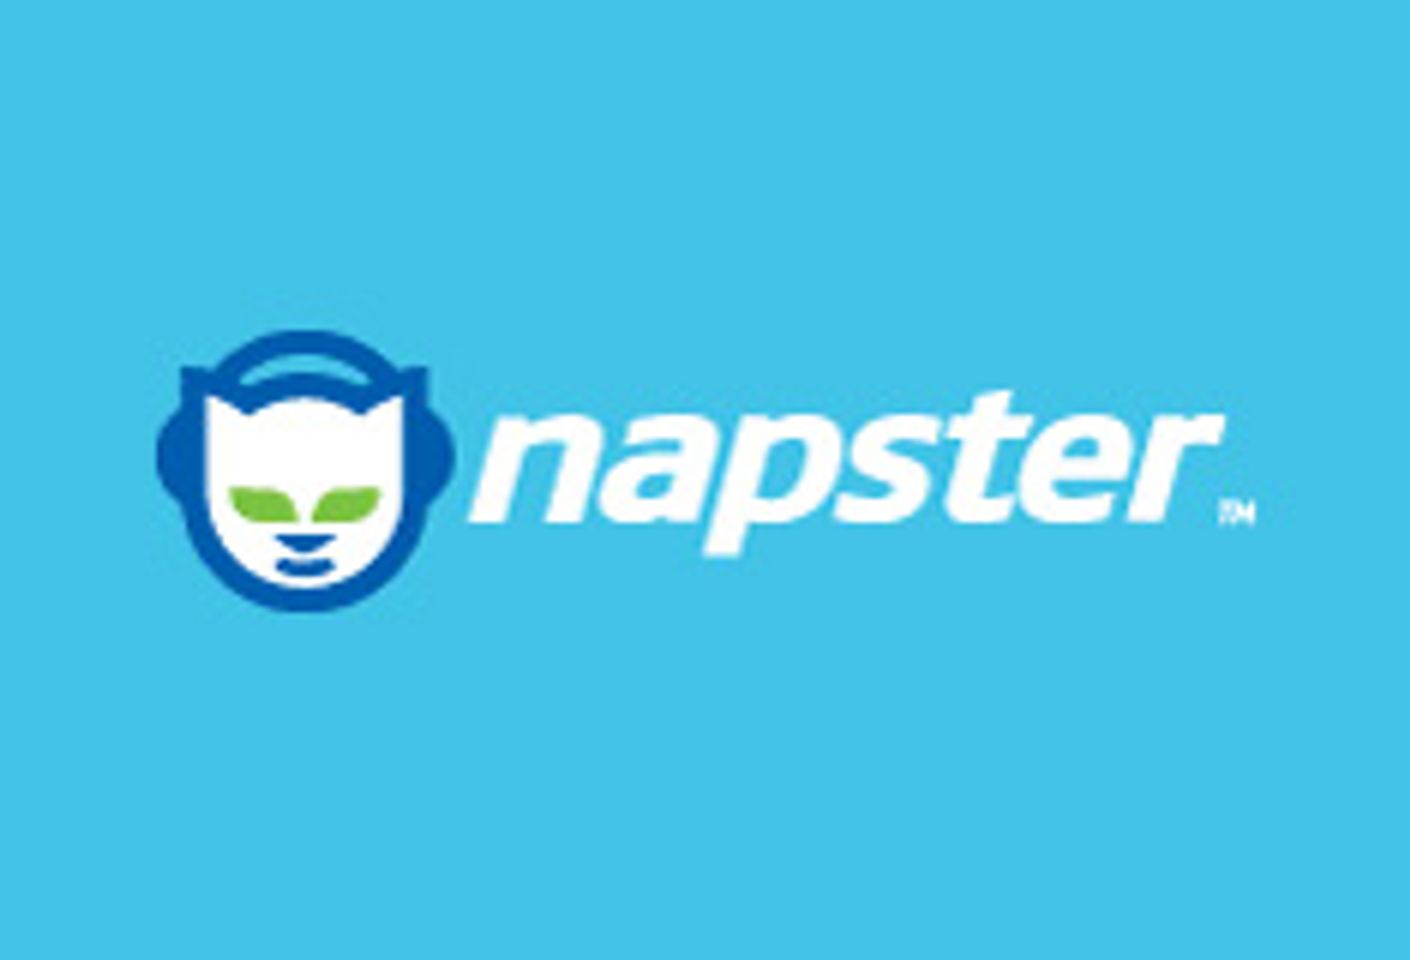 Napster Lawsuits Live: Judge Denies Dismissal Motion